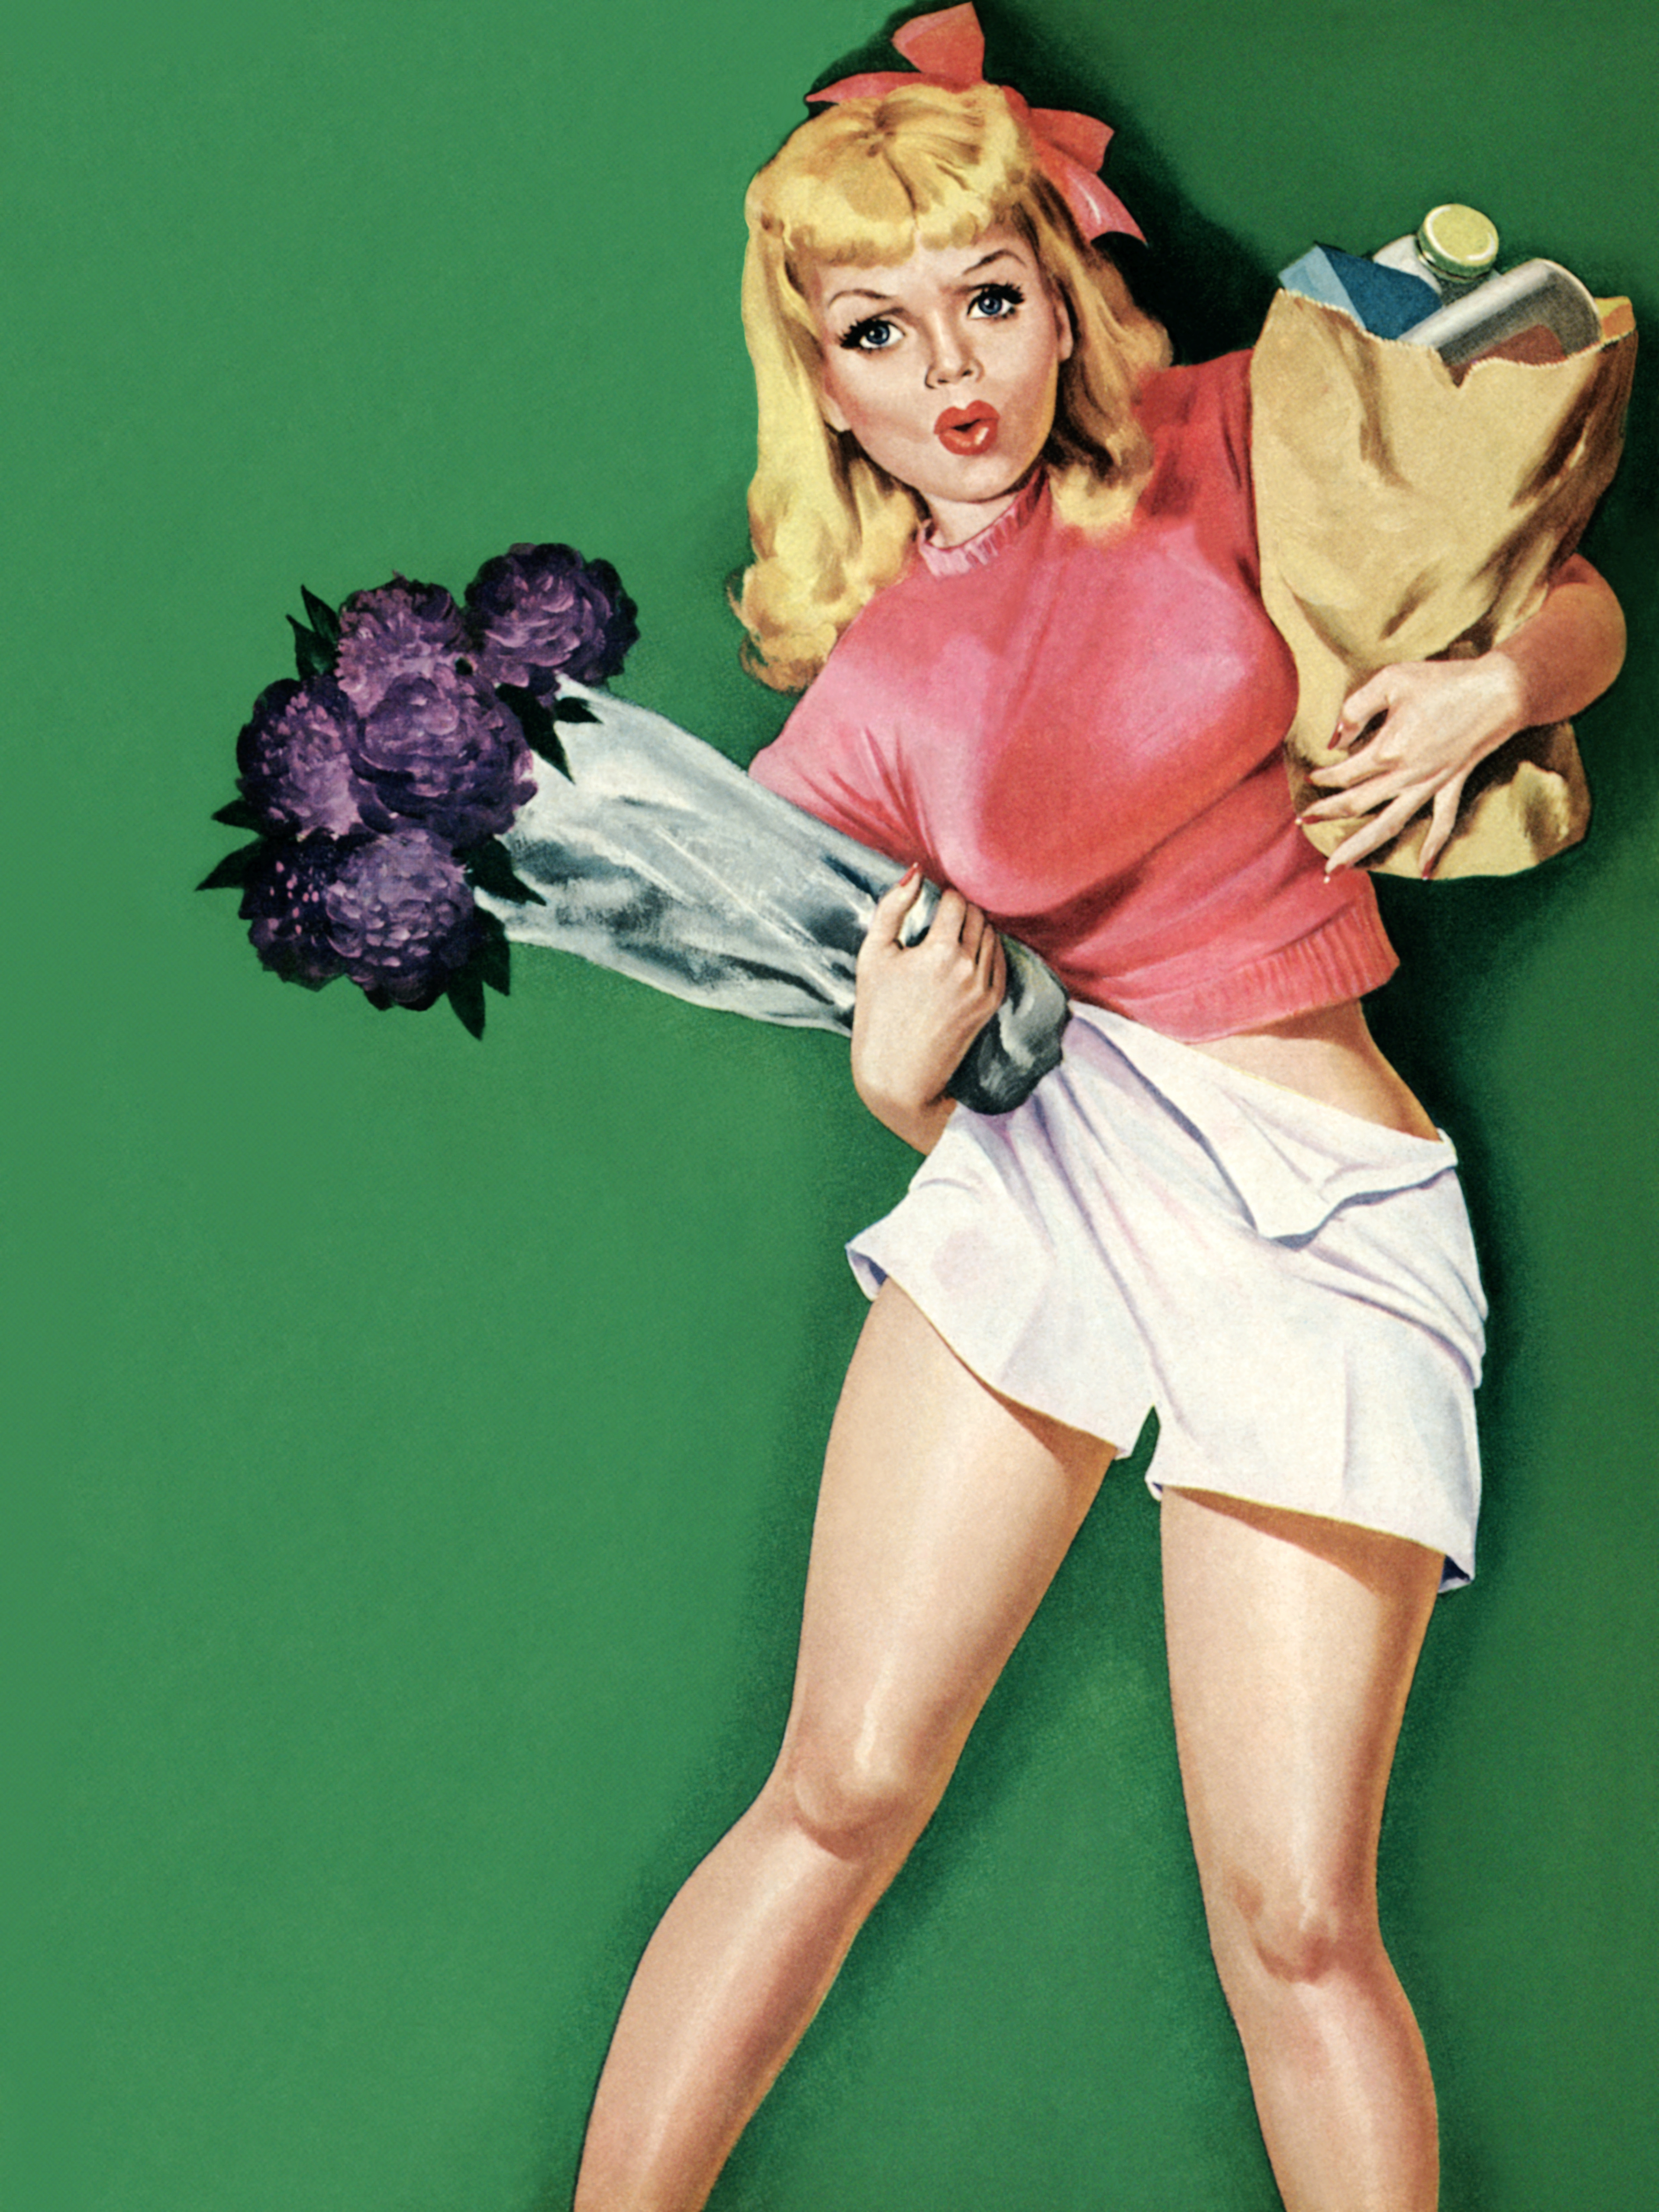 Пин ап сайт pinupcasinoofficial. Постеры в стиле 50-х годов. Девушка с плакатом. Пин ап девушки. Американские плакаты с девушками.